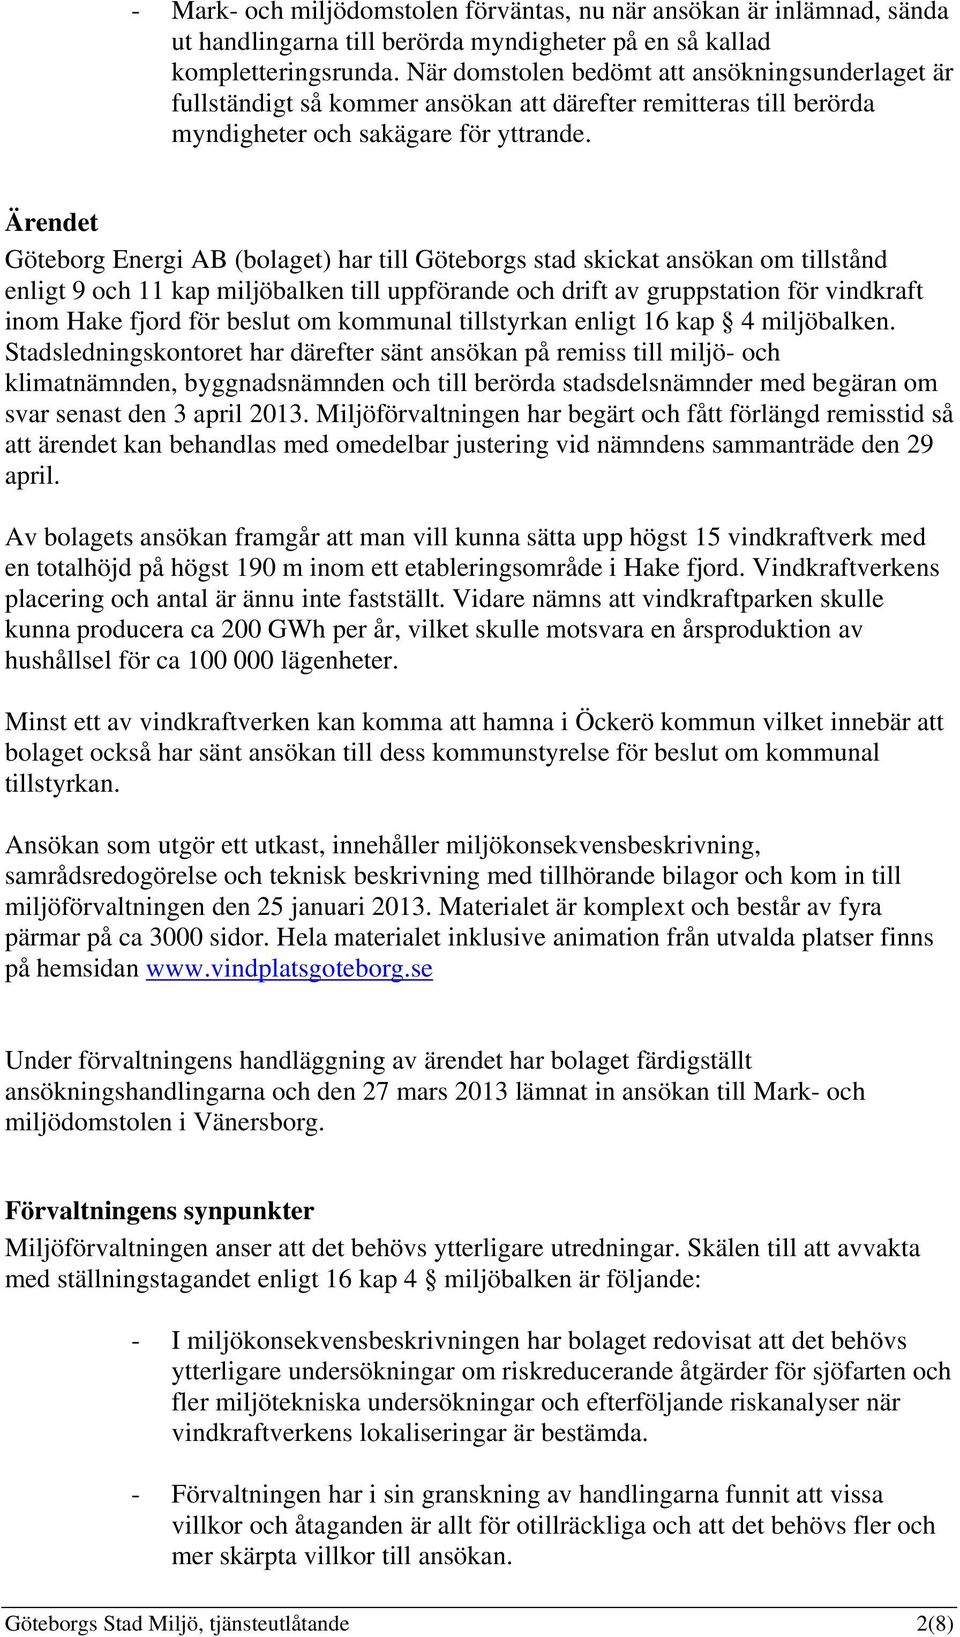 Ärendet Göteborg Energi AB (bolaget) har till Göteborgs stad skickat ansökan om tillstånd enligt 9 och 11 kap miljöbalken till uppförande och drift av gruppstation för vindkraft inom Hake fjord för